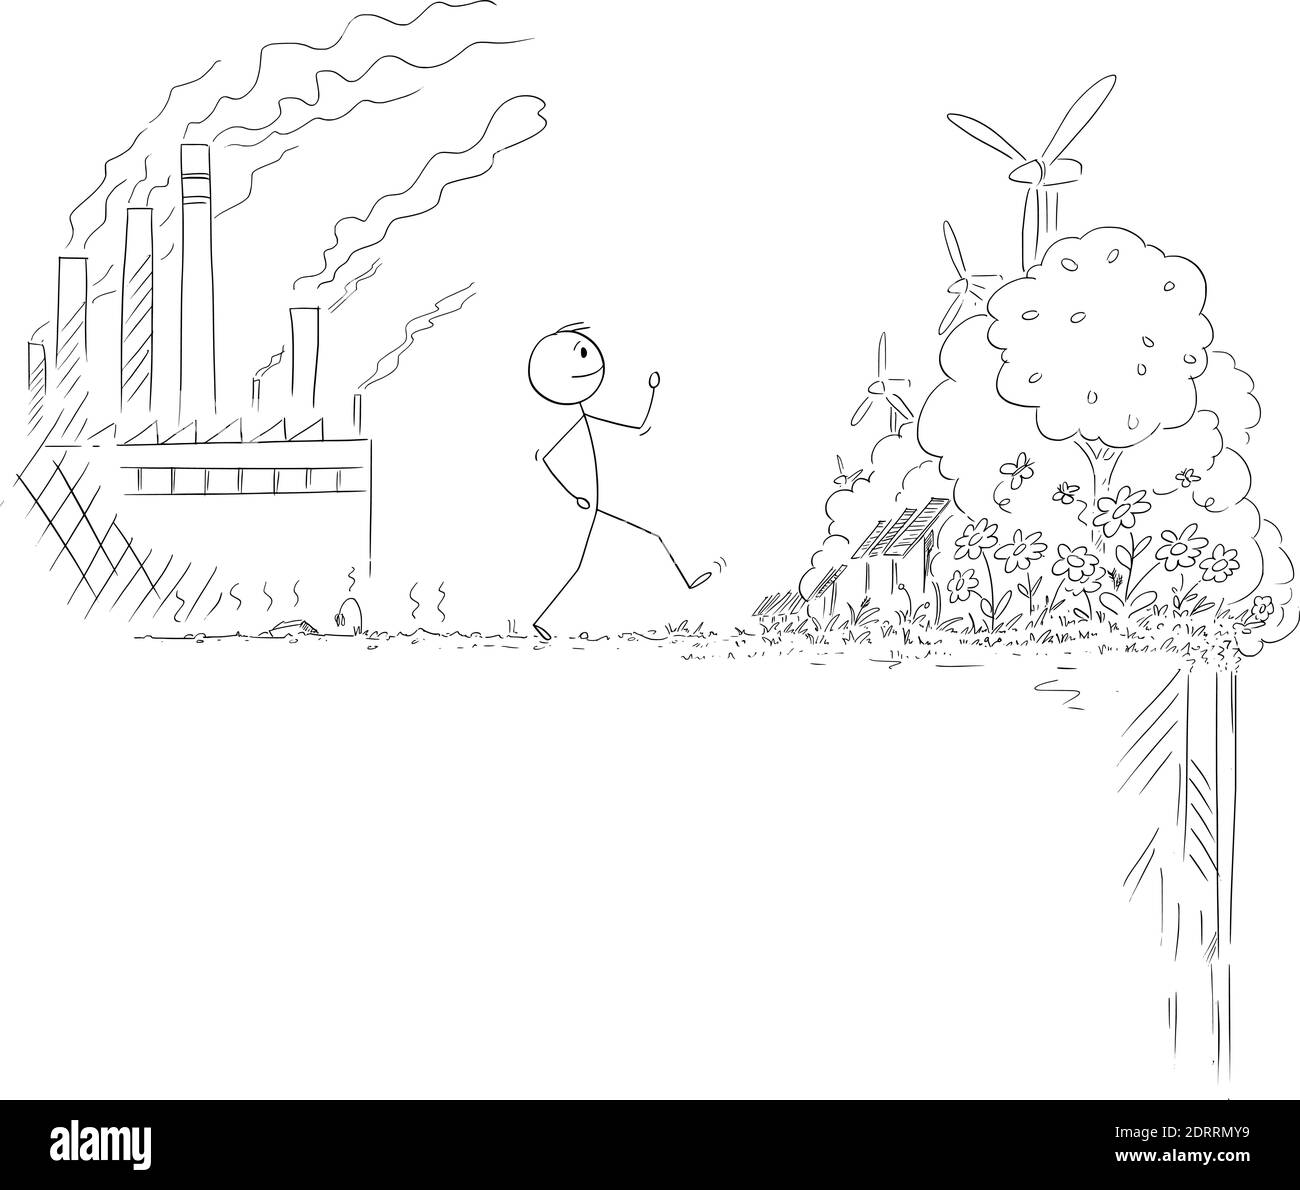 Figura del cartoon vettoriale illustrazione dell'uomo che cammina da un luogo con la natura distrutta dall'inquinamento dell'industria pesante e degli impianti del carbone al futuro piacevole delle risorse rinnovabili di energia, ma ci è rischio dietro. Illustrazione Vettoriale